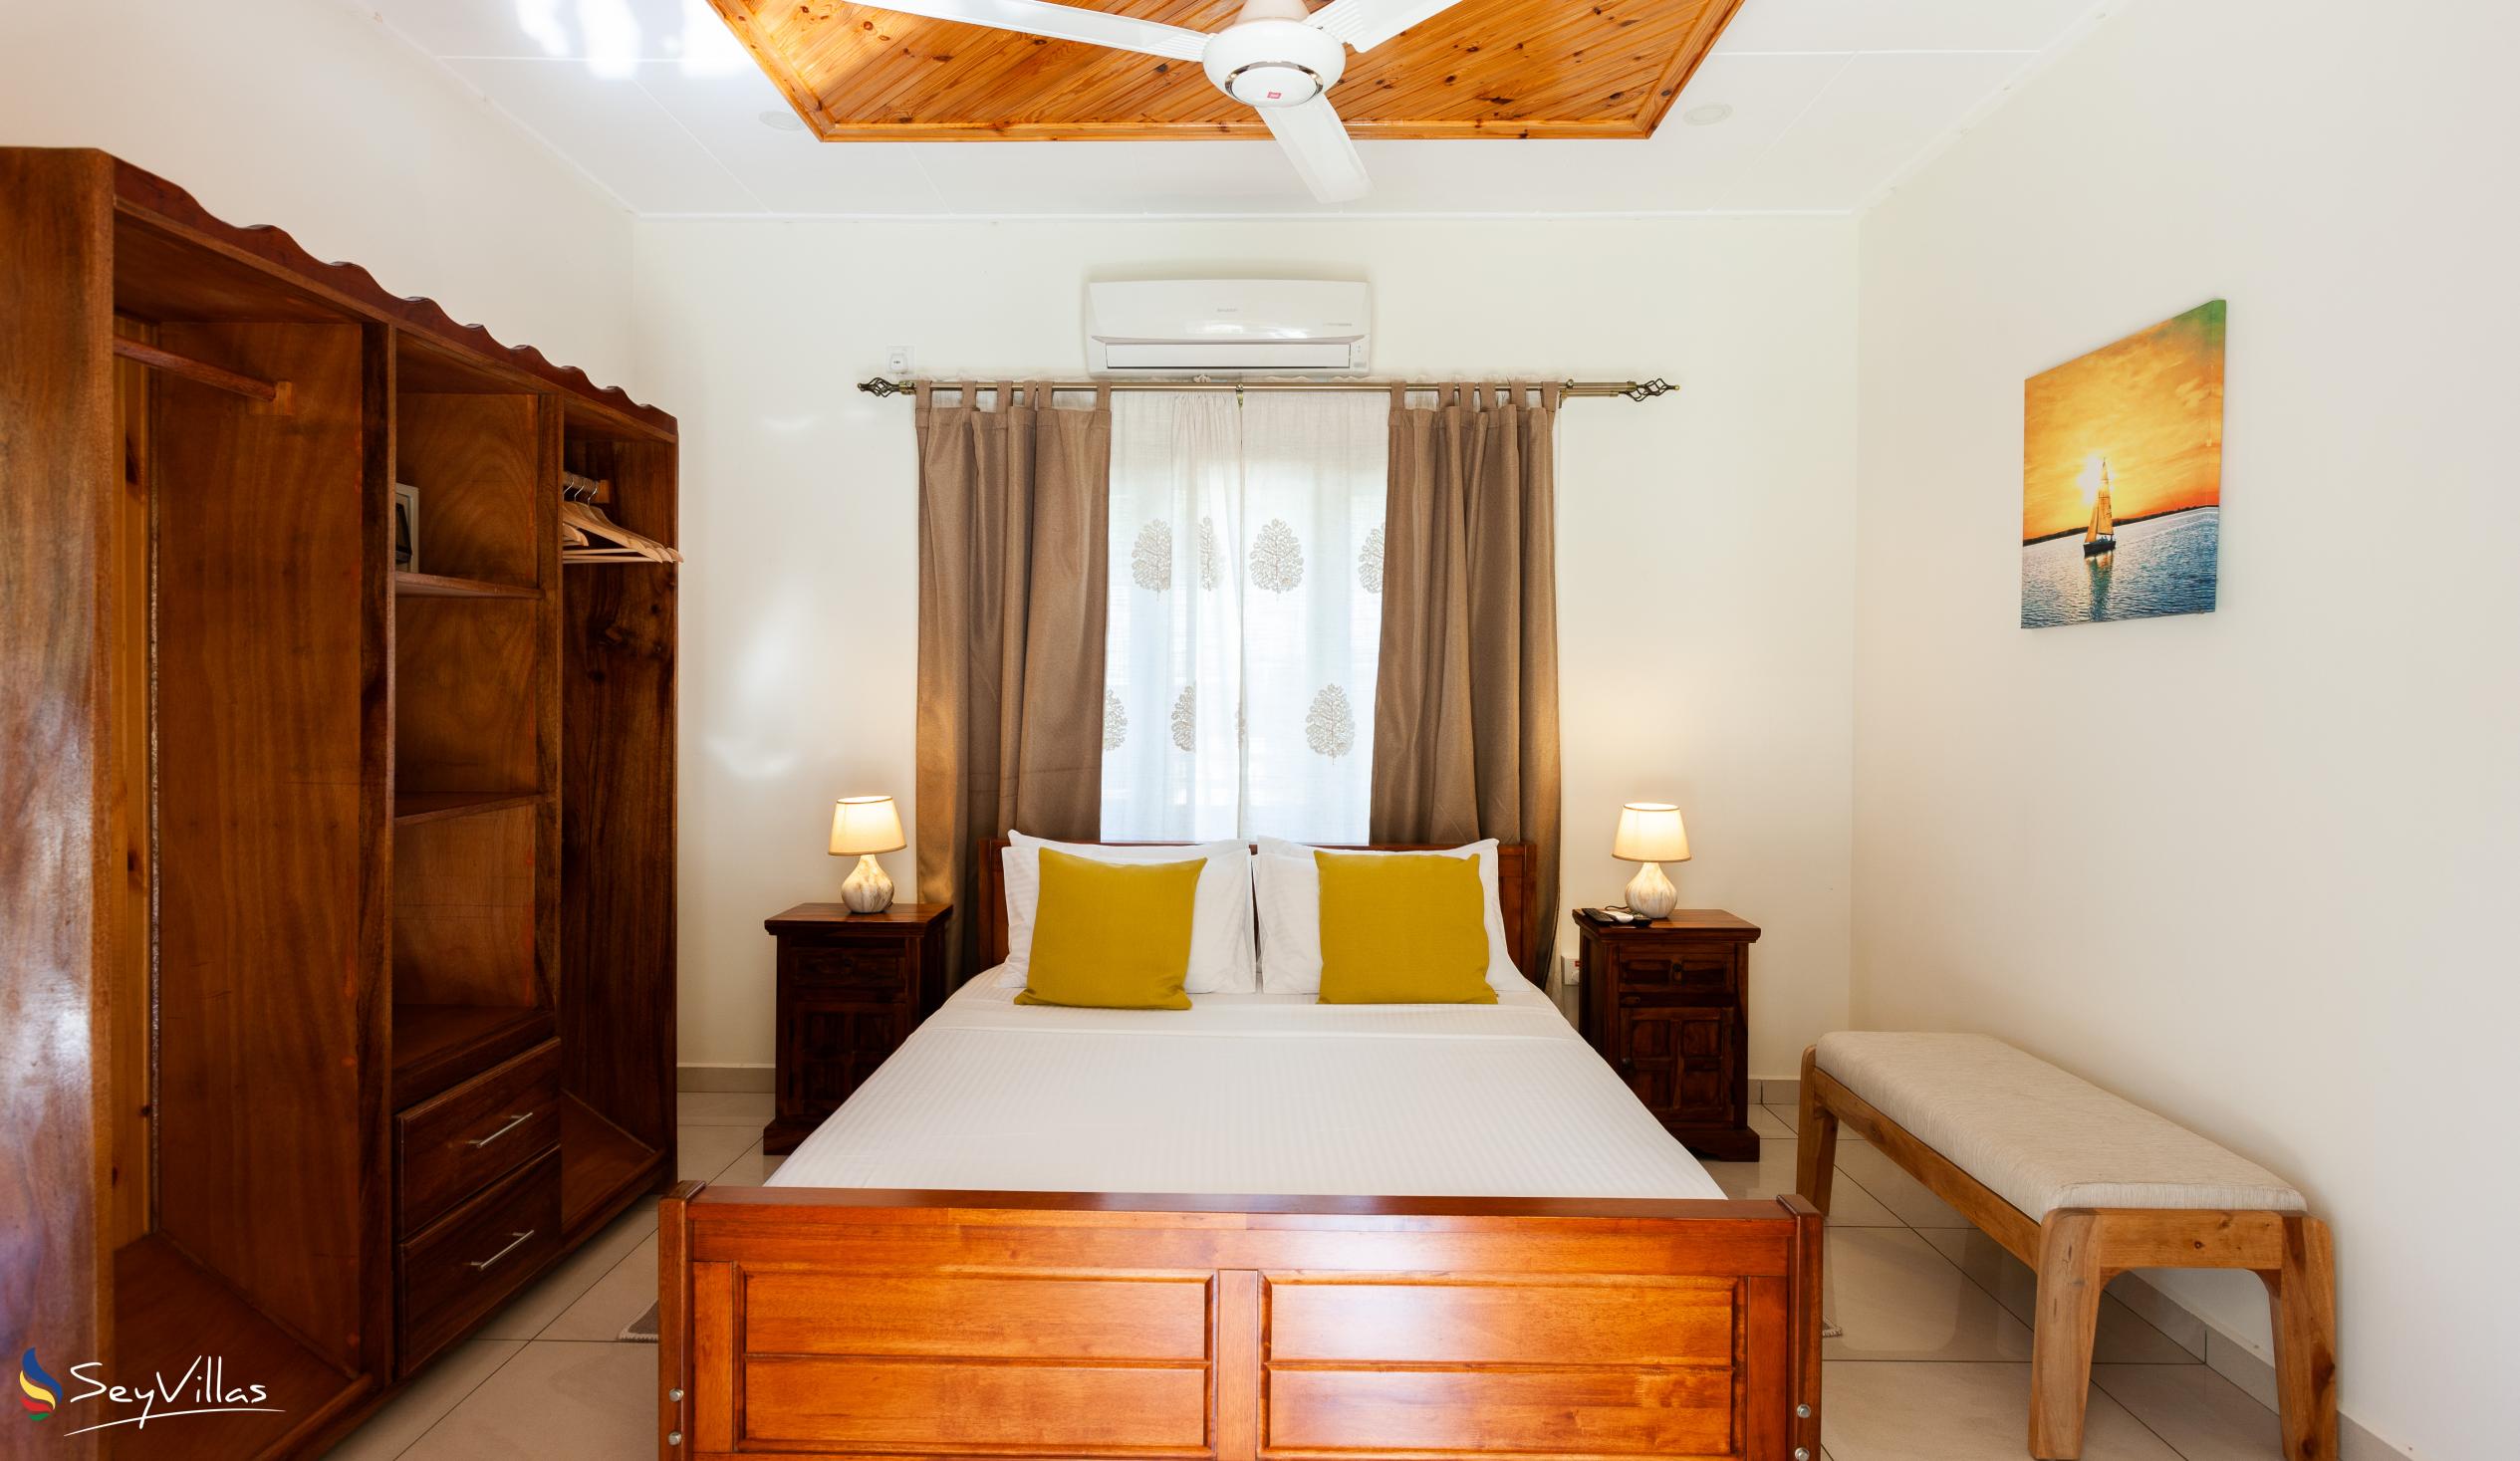 Foto 23: Maison Ed-Elle - Appartement 1 chambre - La Digue (Seychelles)